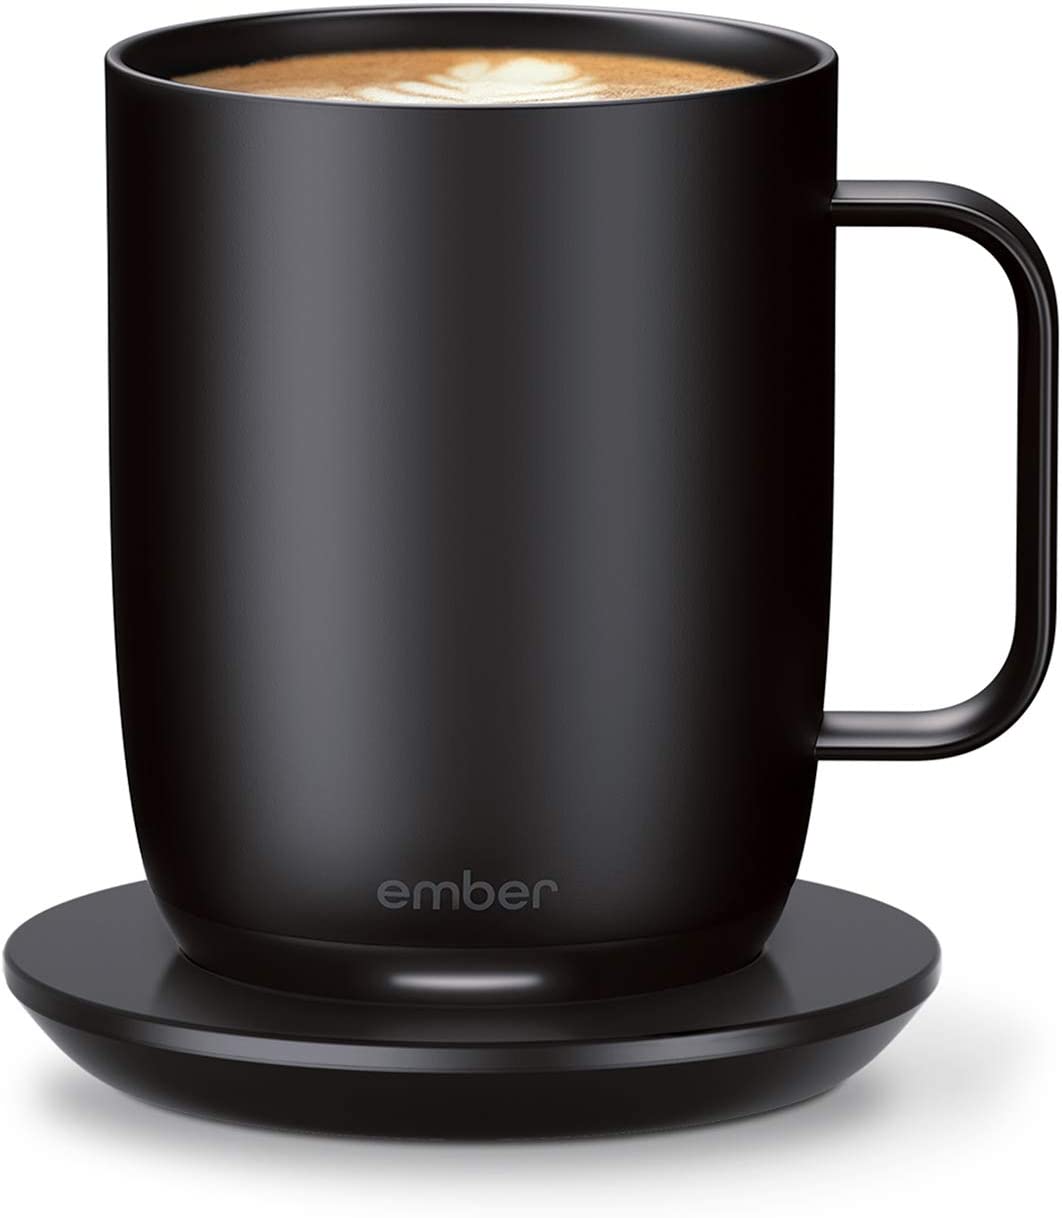 Ember Travel Mug 2+, 12 oz, Temperature Control Smart Travel Mug